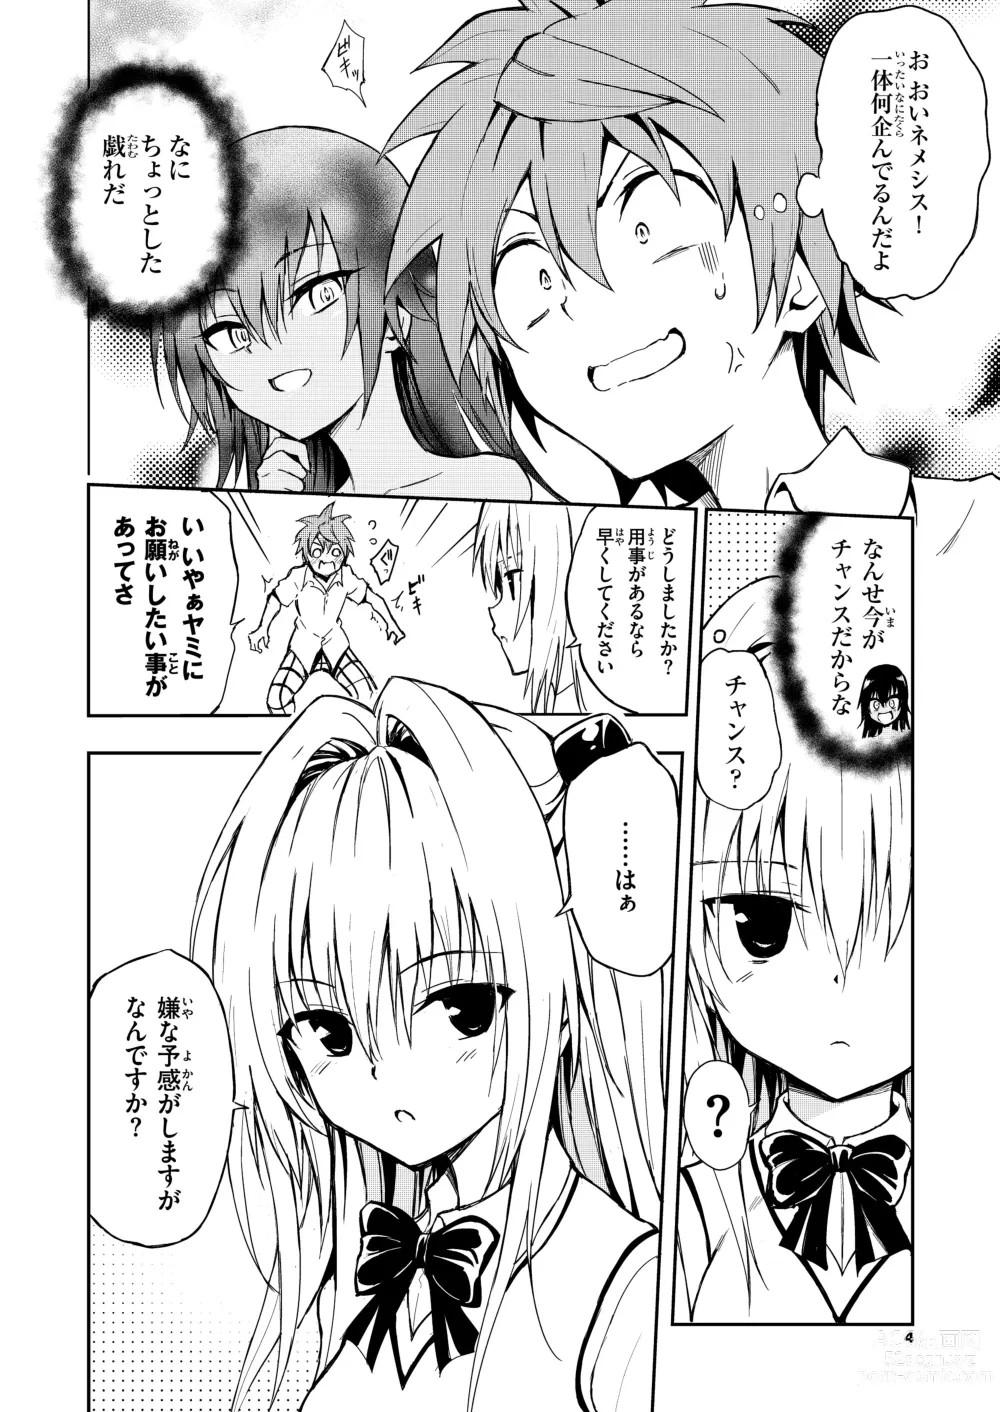 Page 4 of doujinshi Ecchii no wa Kirai desu ka?